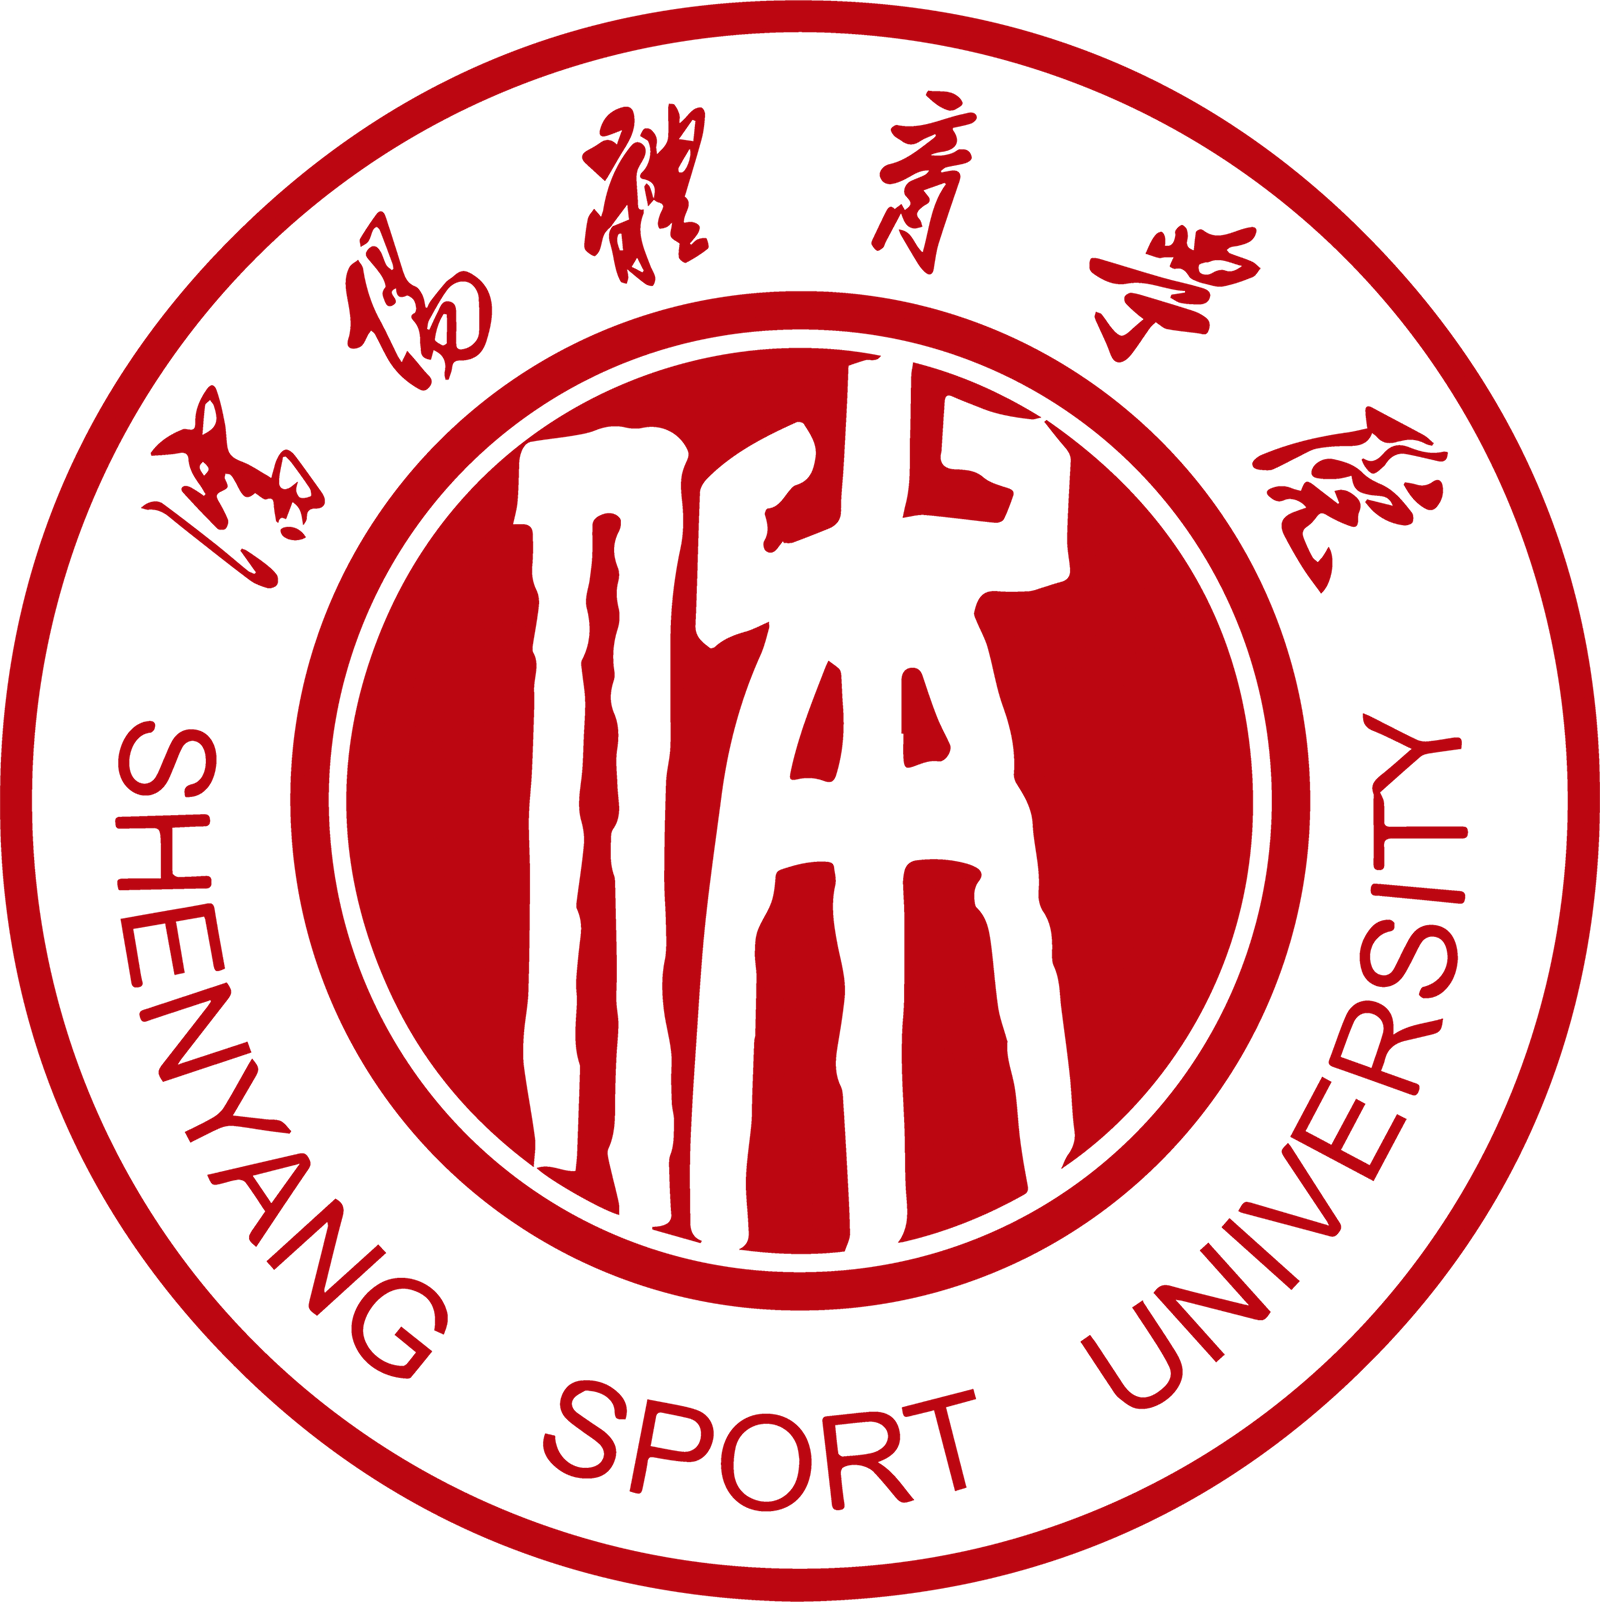 沈阳体育学院校徽logo矢量标志素材